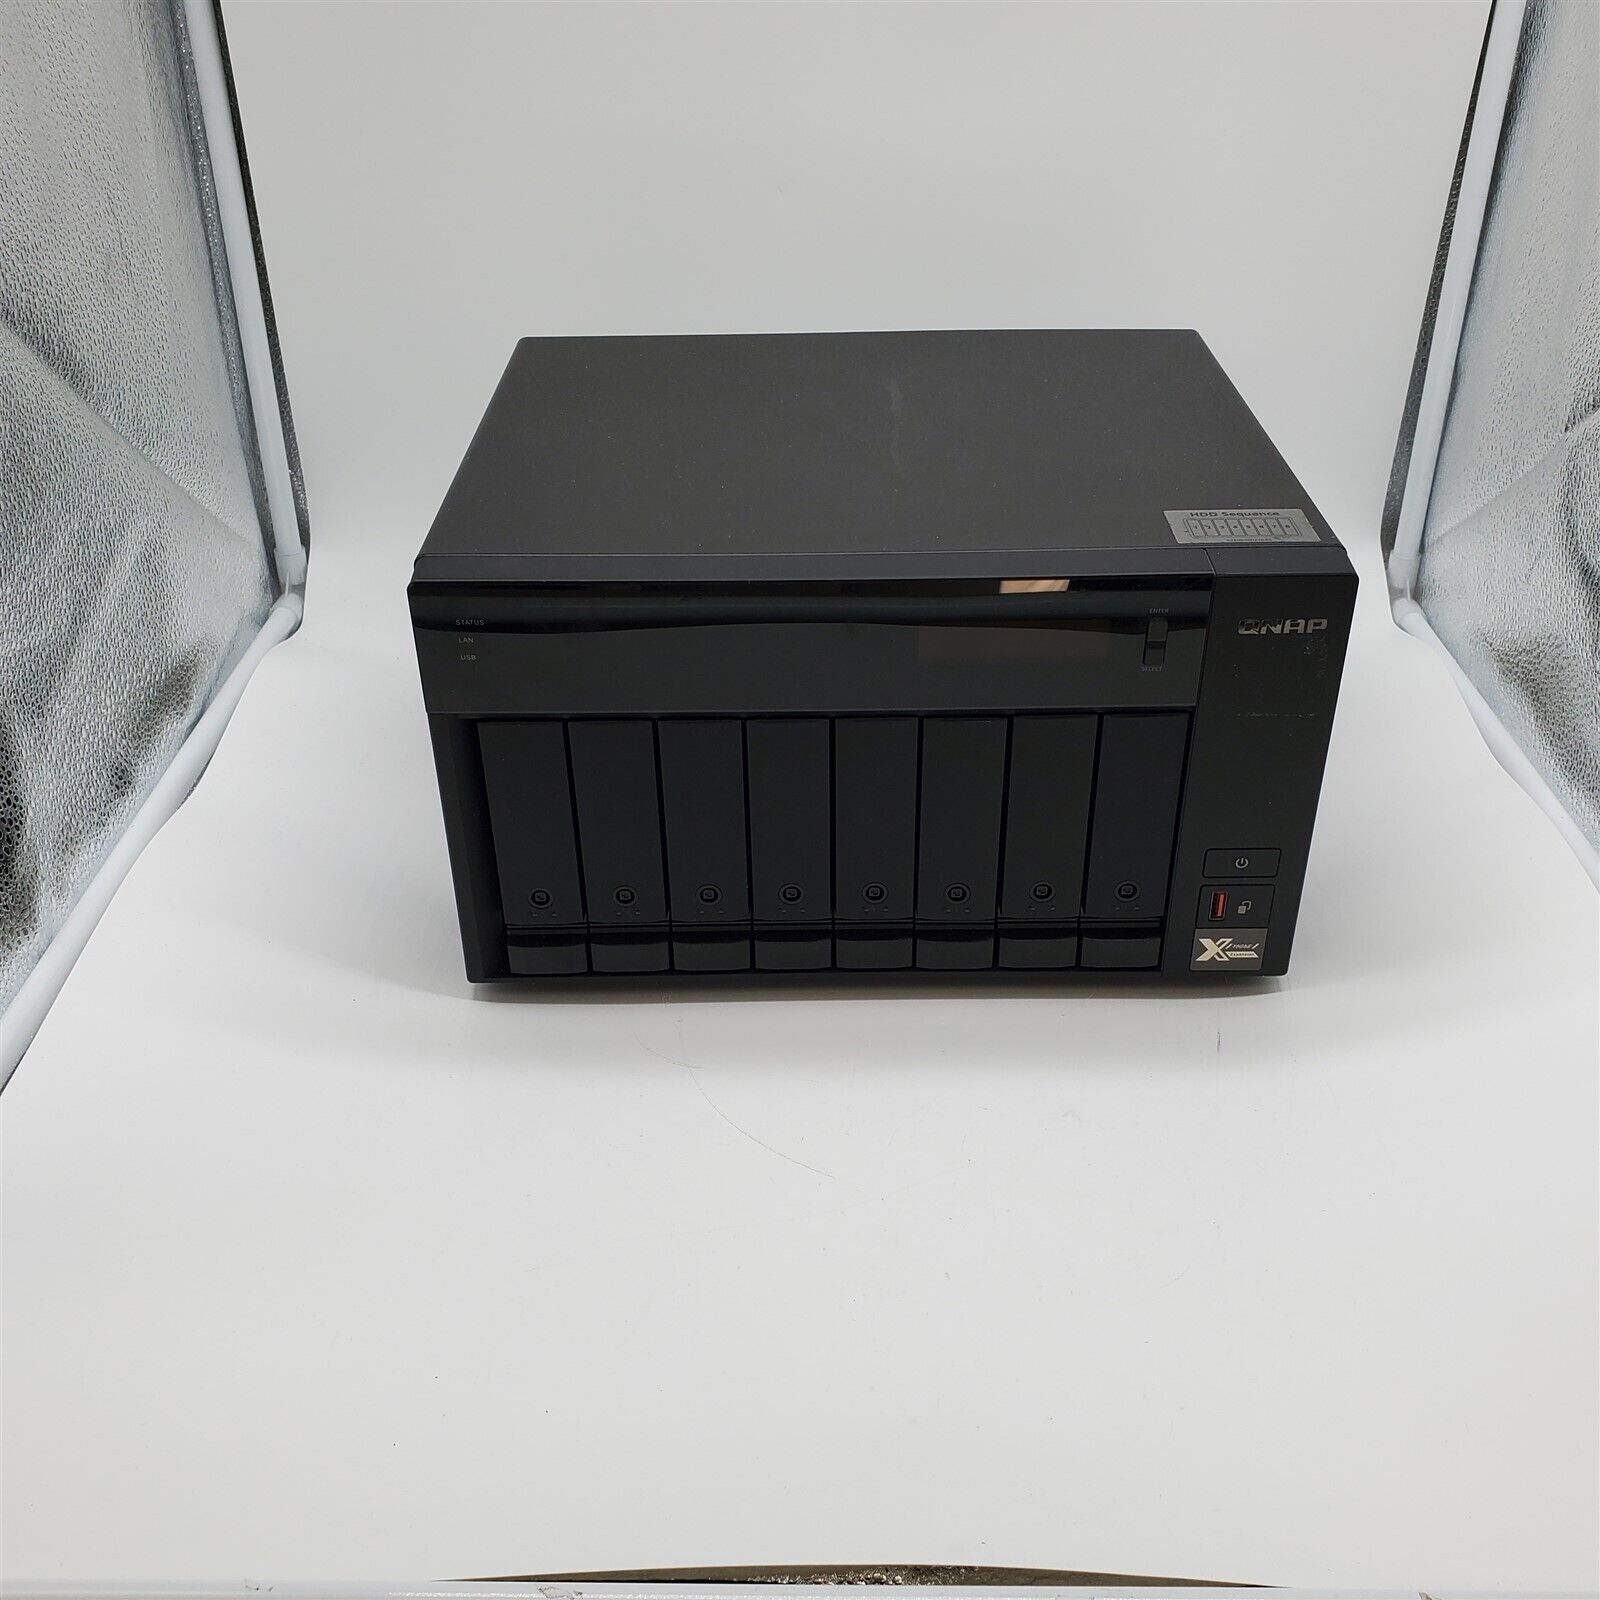 QNAP TVS-872XT-i5-16G-US 8 Bay Thunderbolt 3 NAS with 16GB RAM, 10GbE